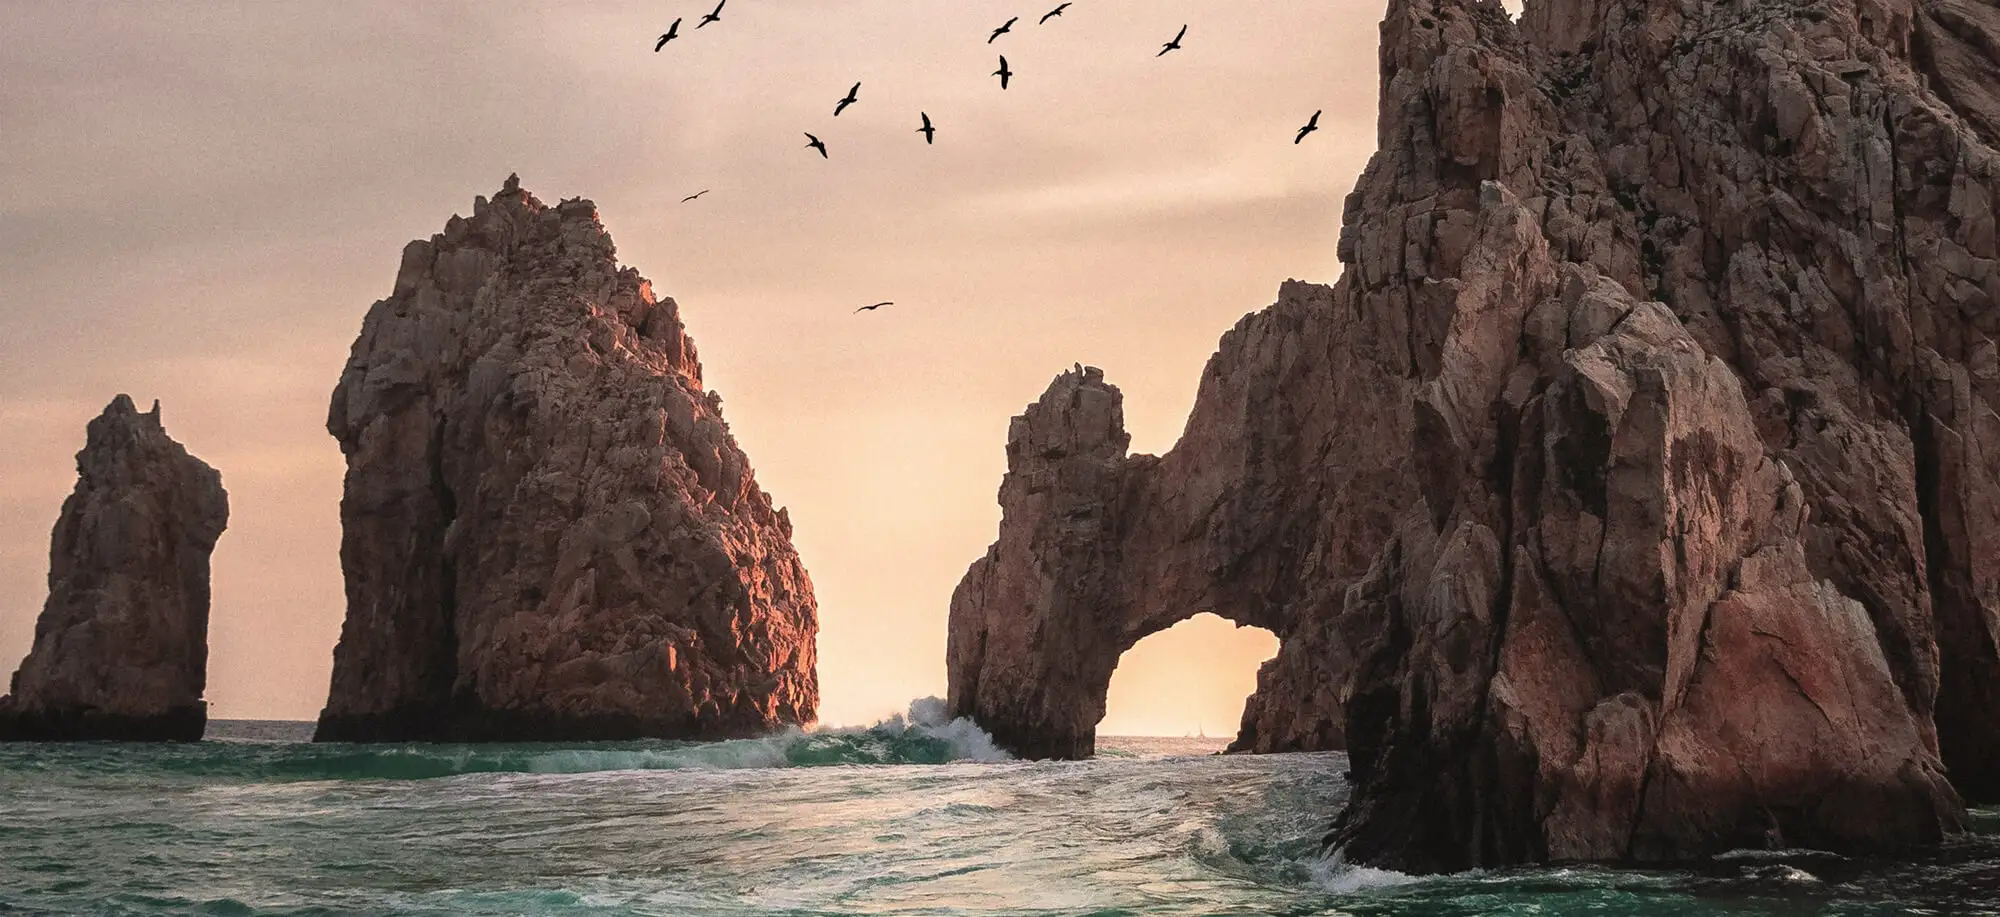  Baja California